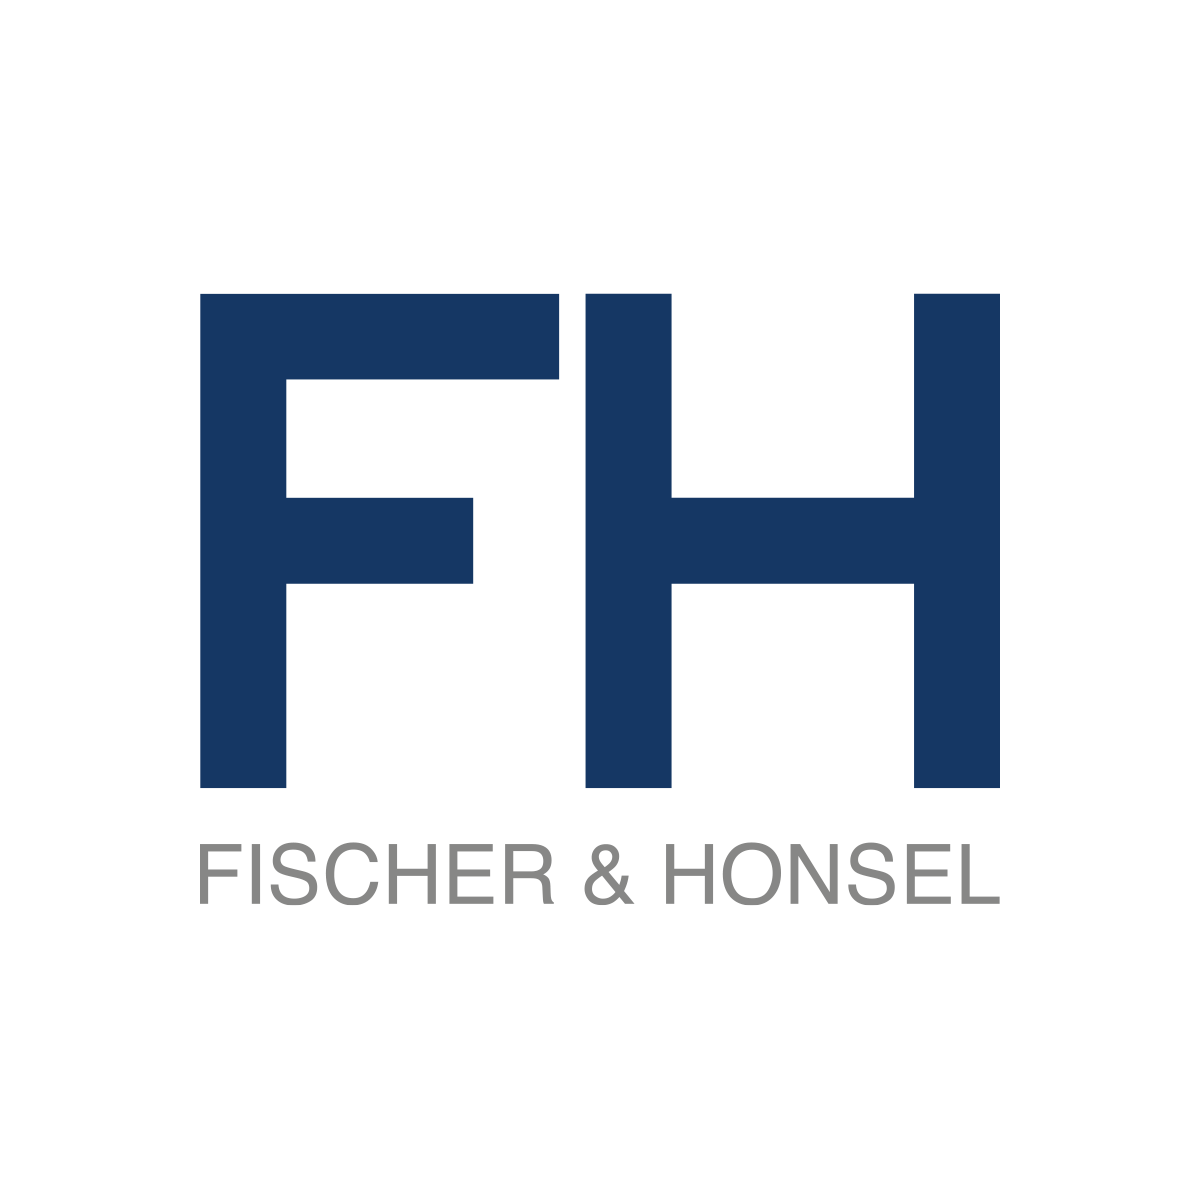 FISCHER & HONSEL